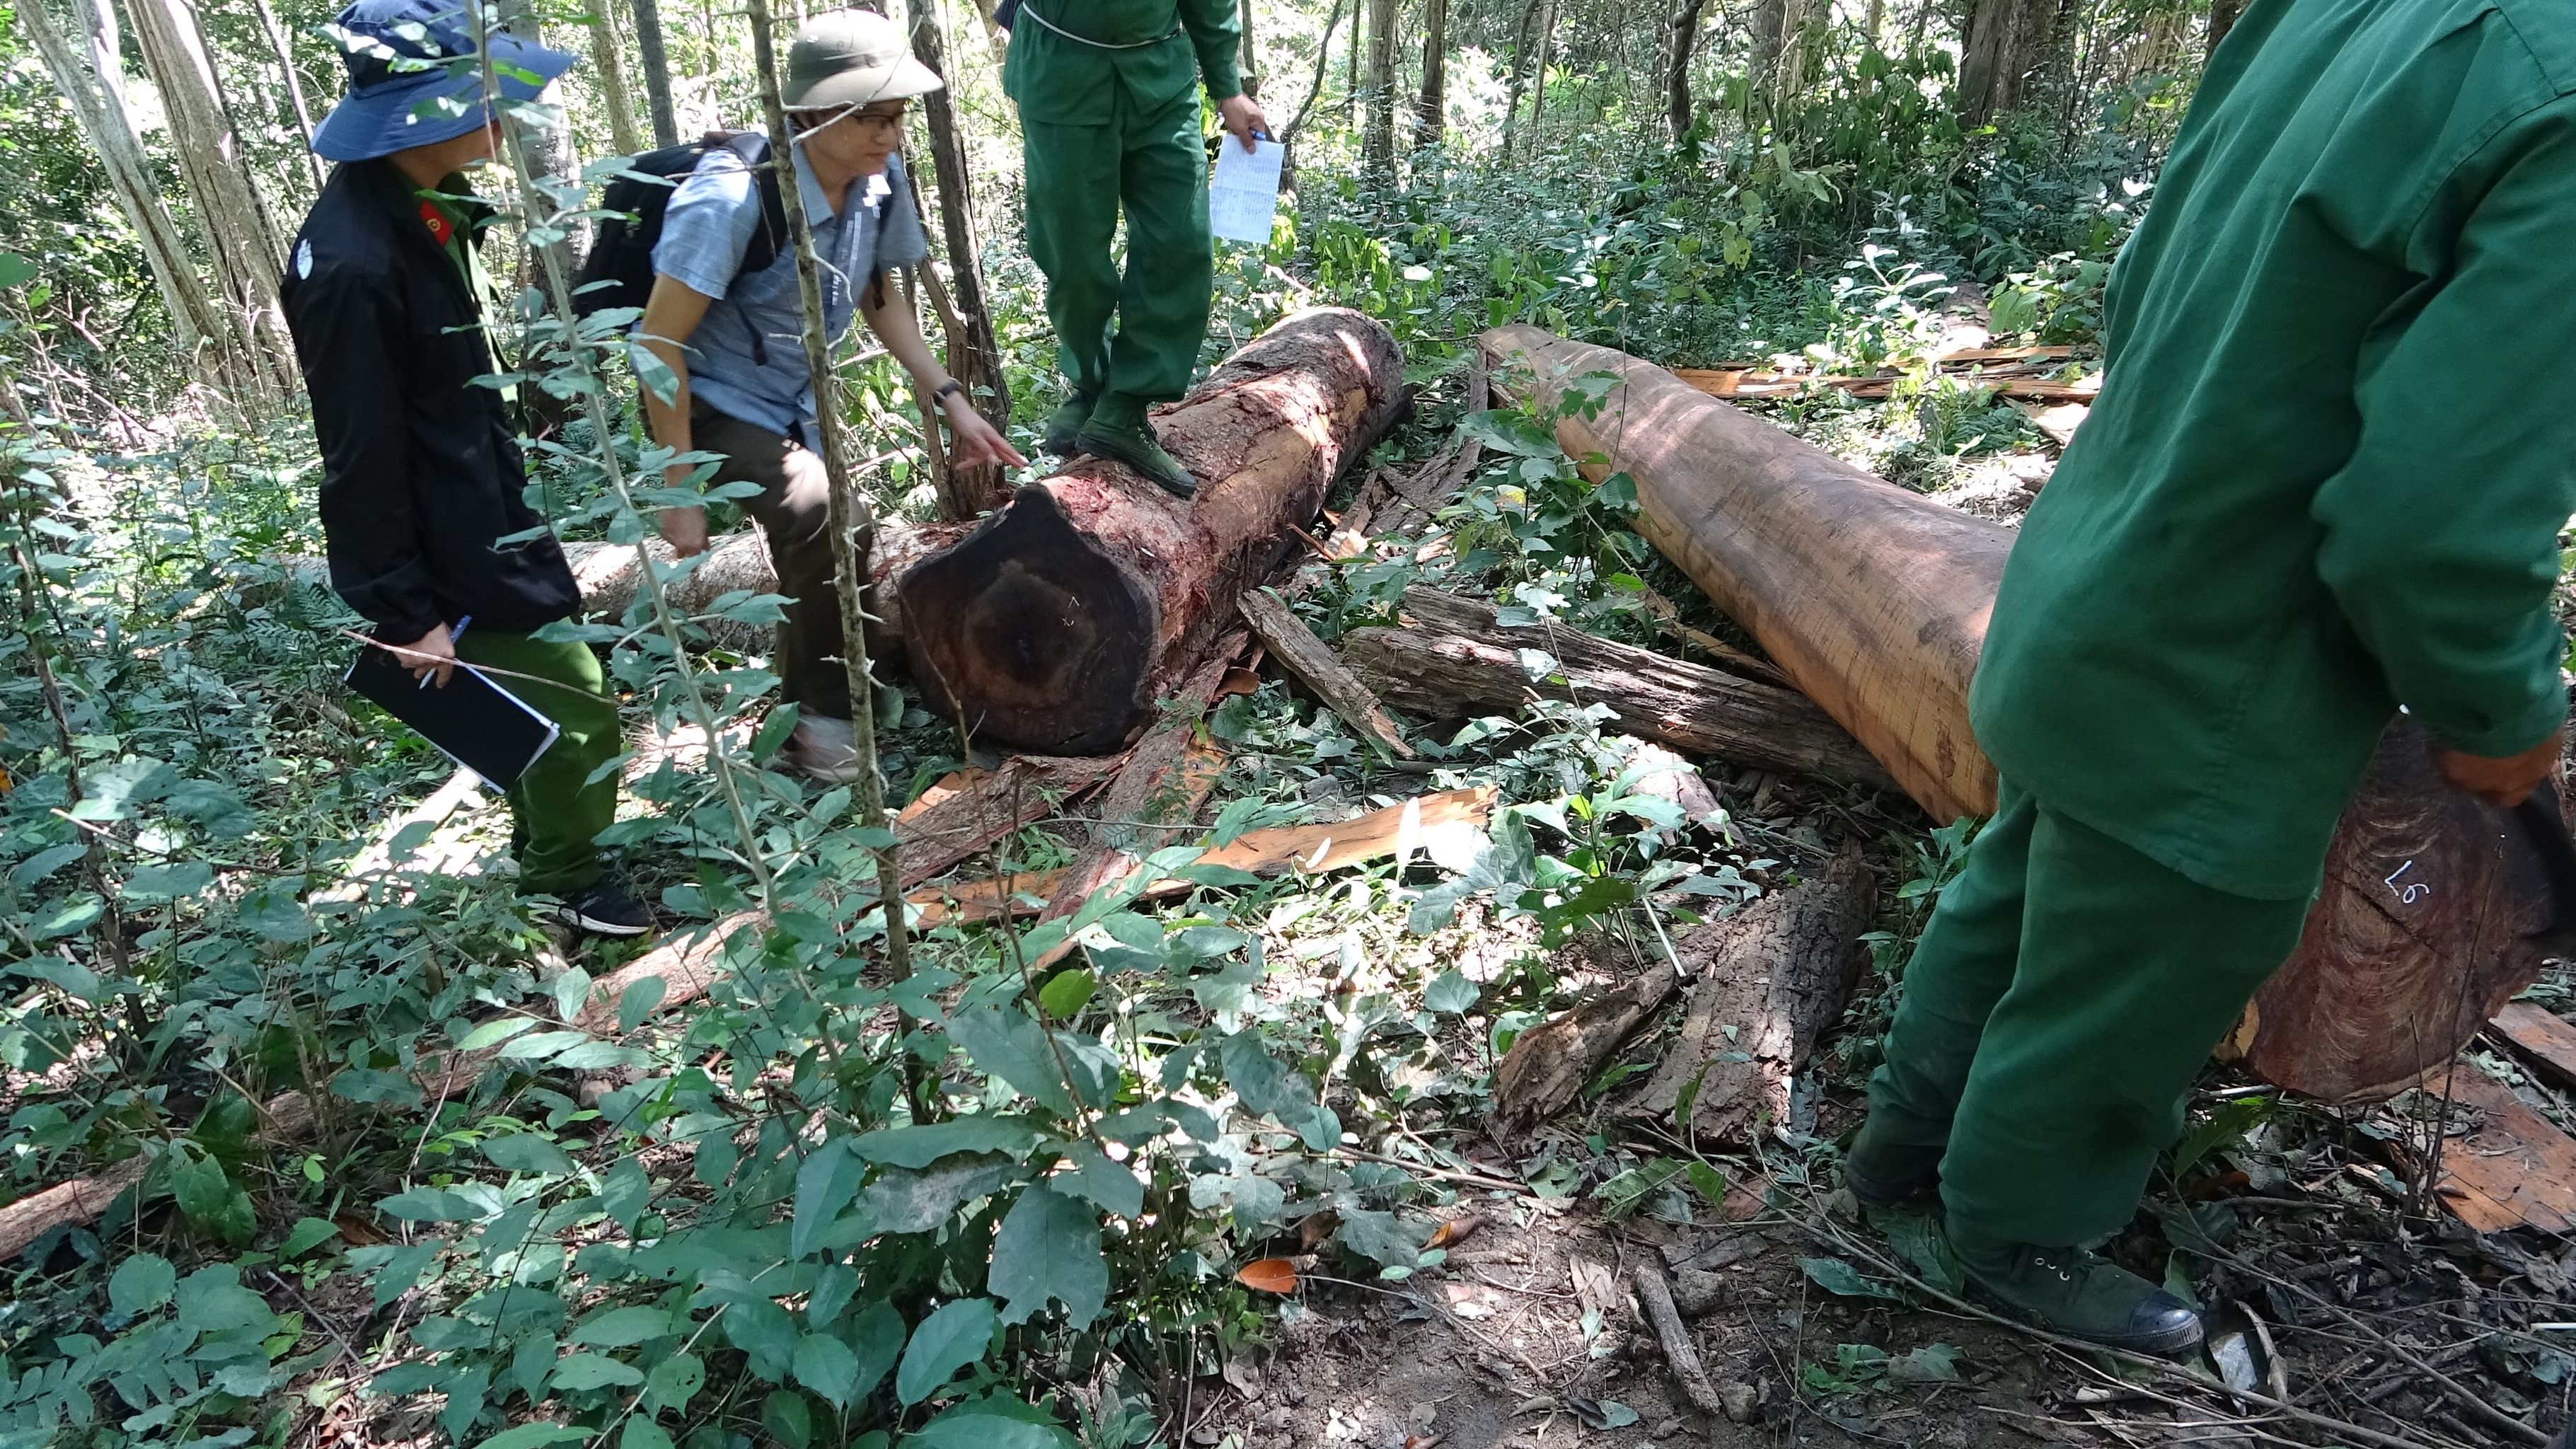 An ninh - Hình sự - Đắk Lắk: Một cán bộ kiểm lâm chết bất thường trong rừng